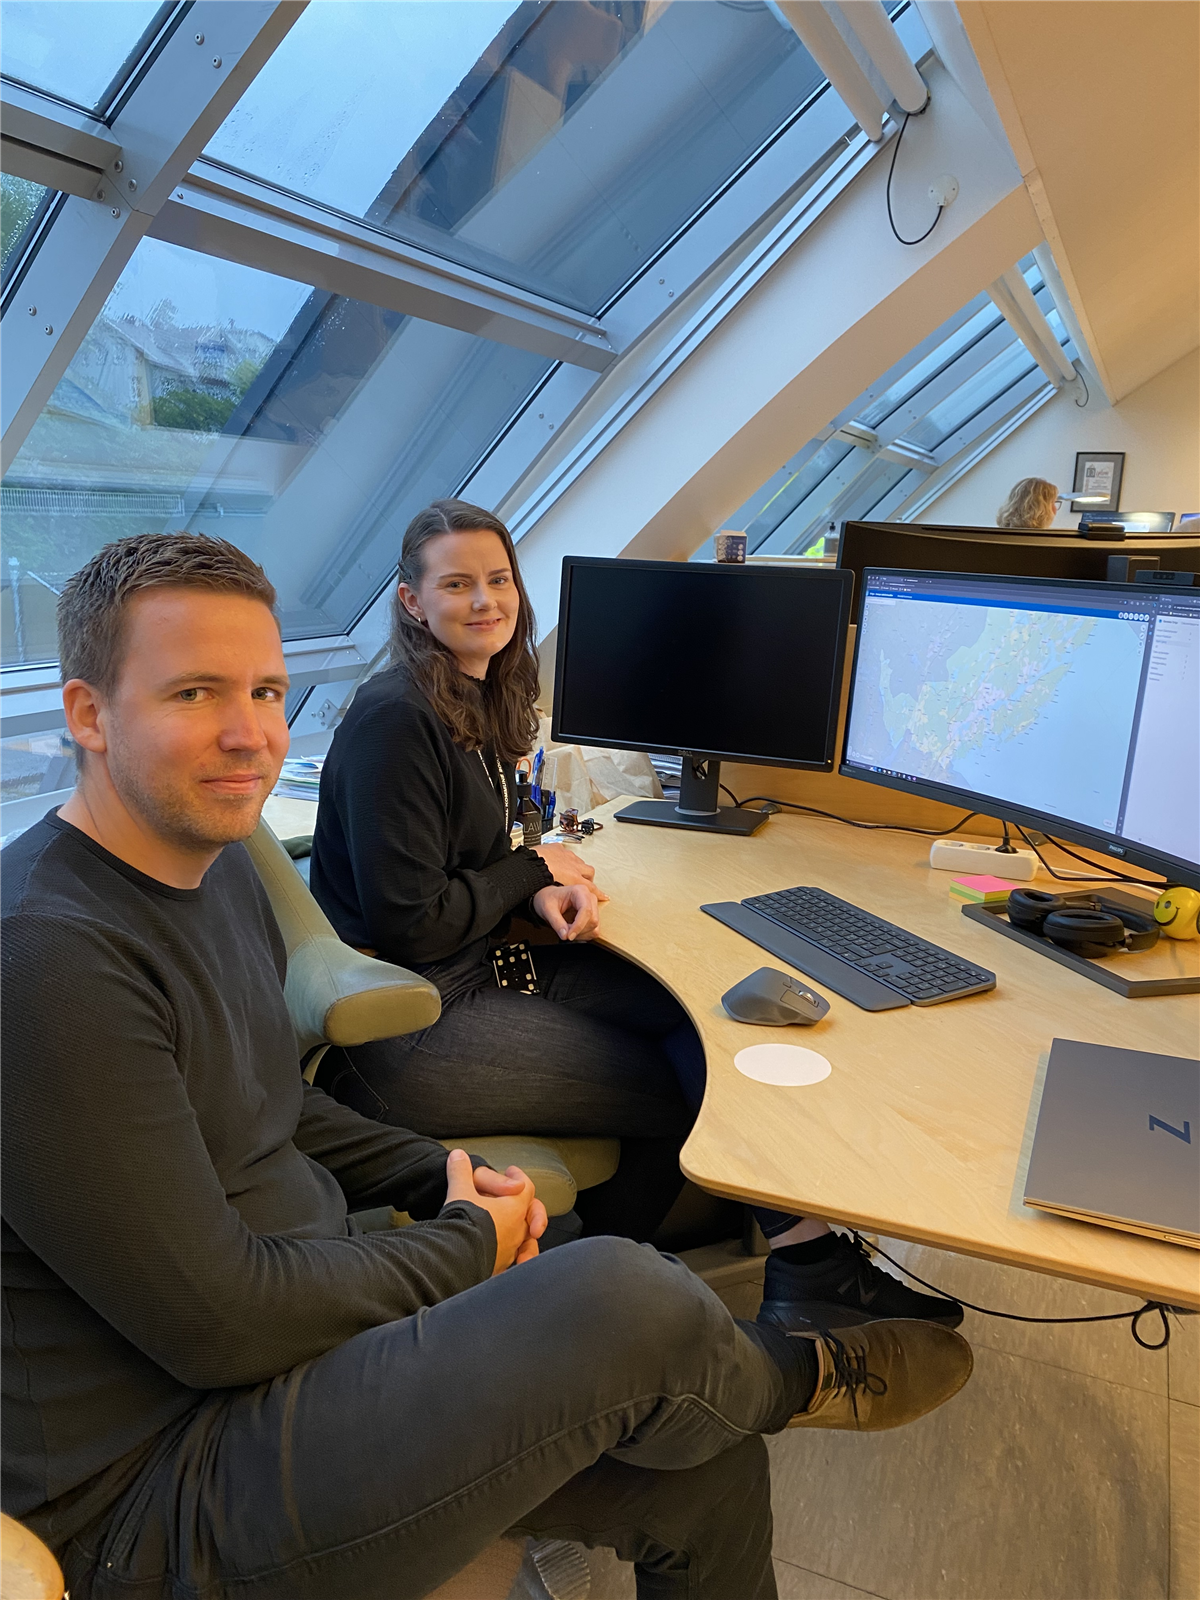 Simon Ludvigsen og Mette Katla Austad sitter ved siden av hverandre på arbeidsplassen til Mette.  - Klikk for stort bilde